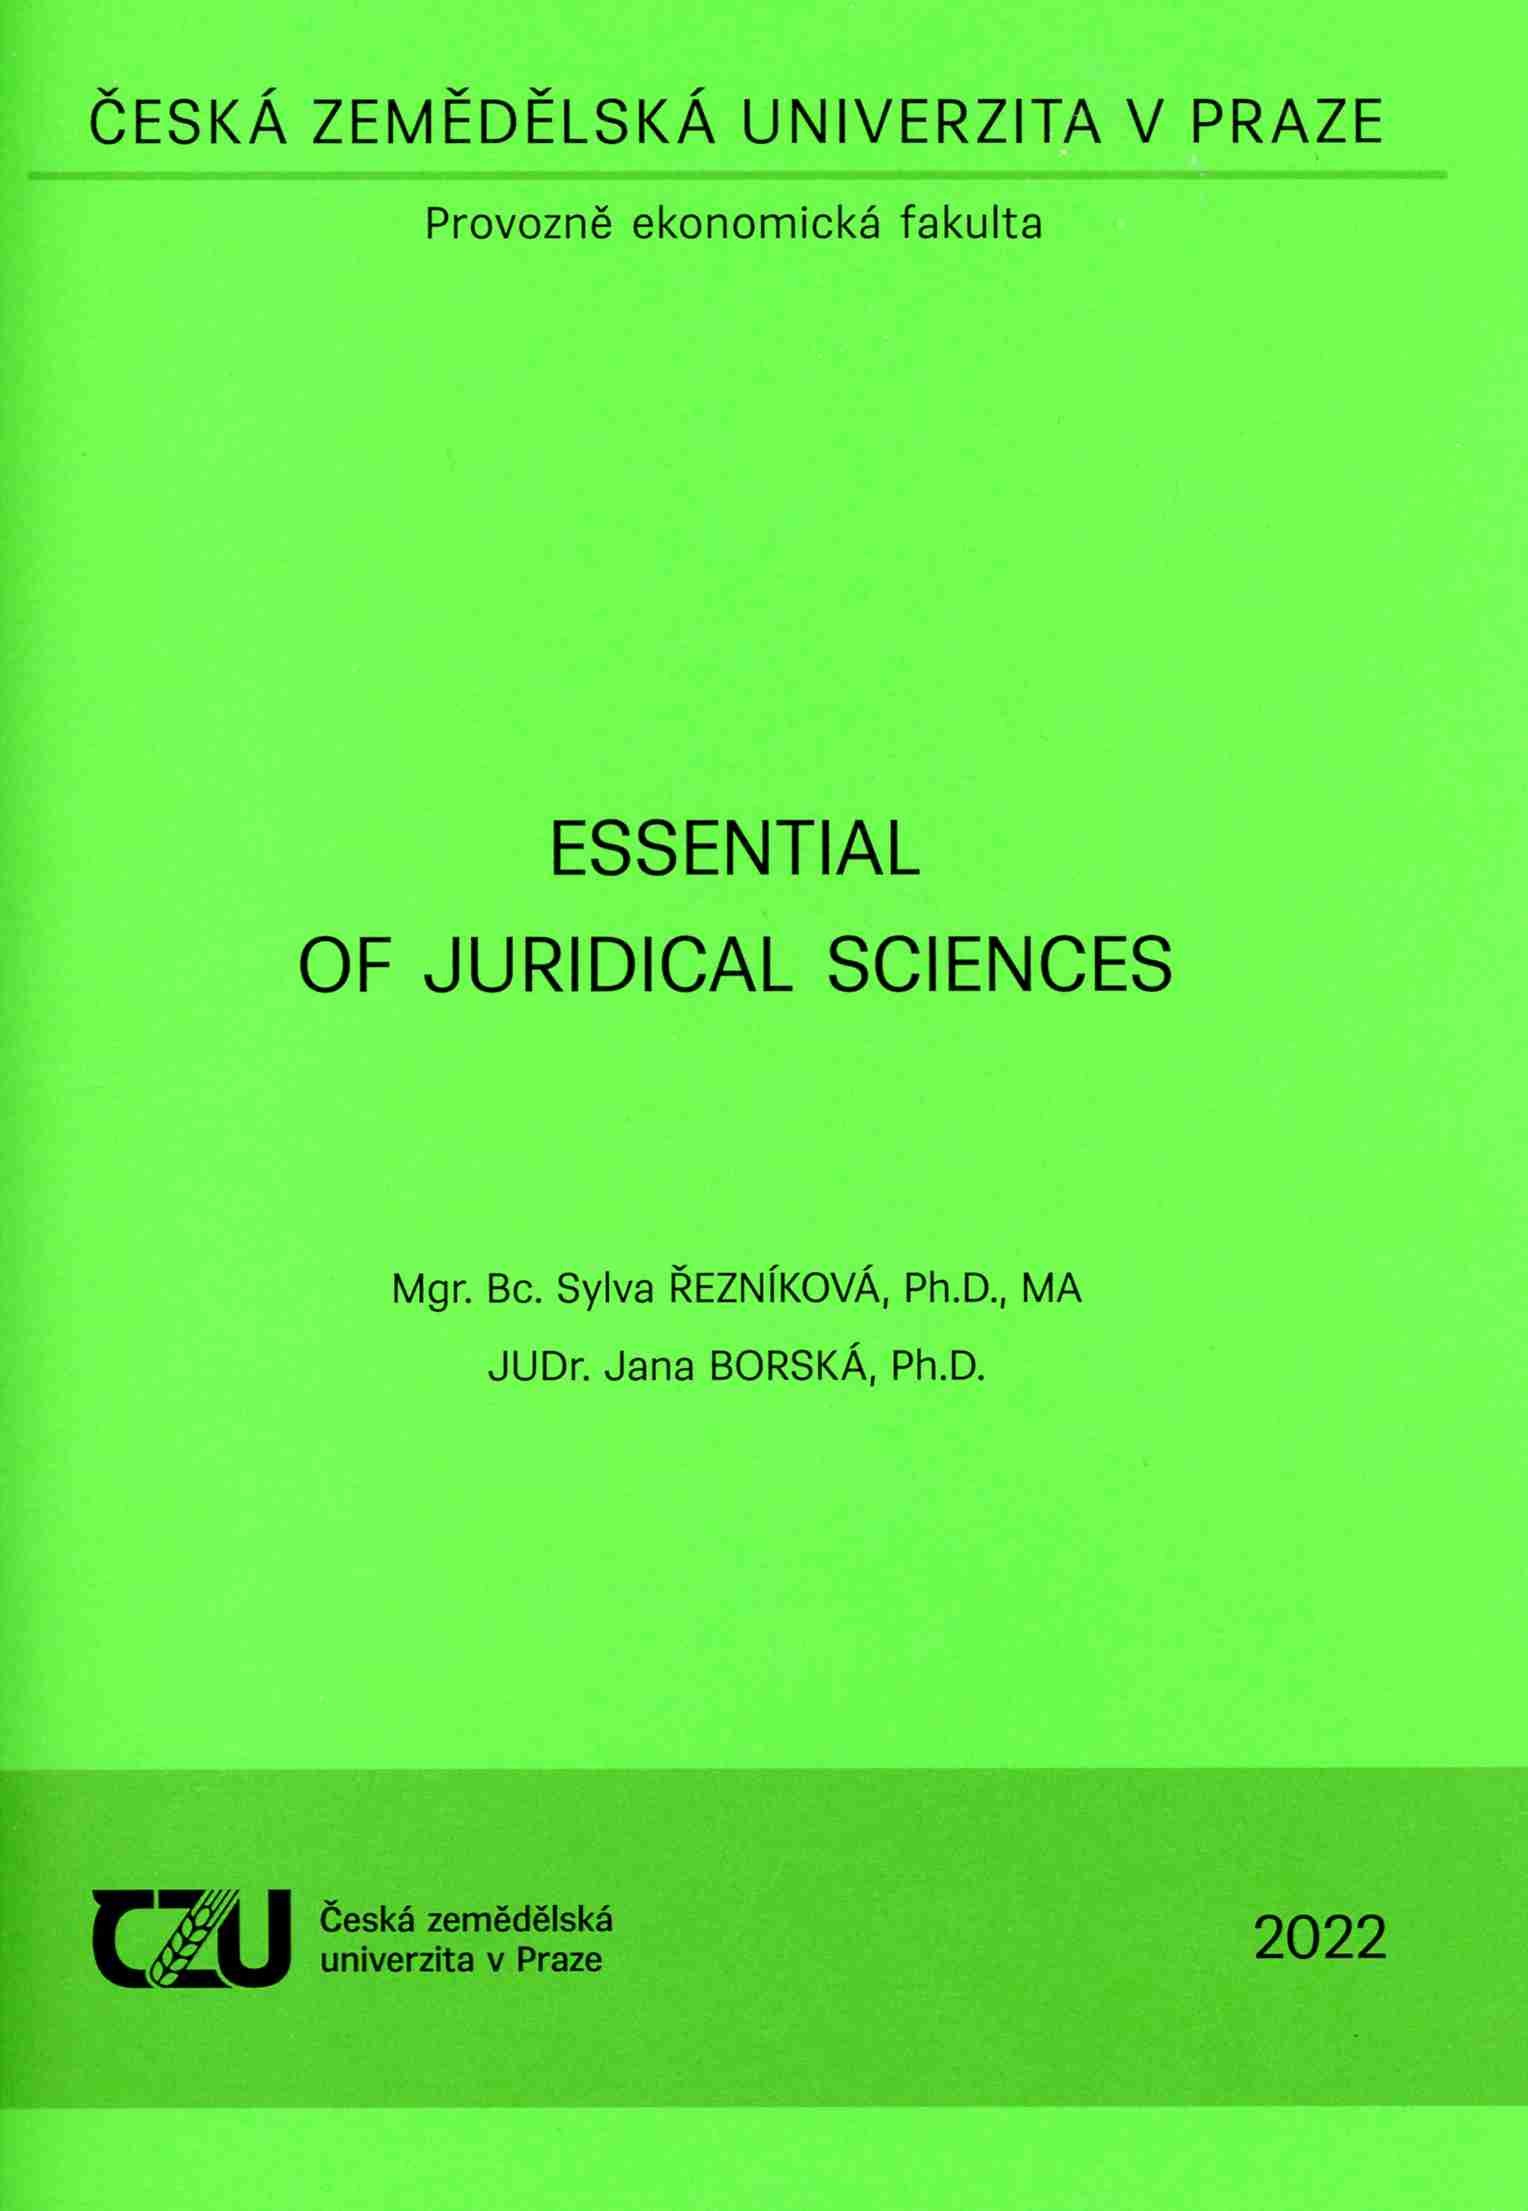 Essential of Juridical Sciences, 363